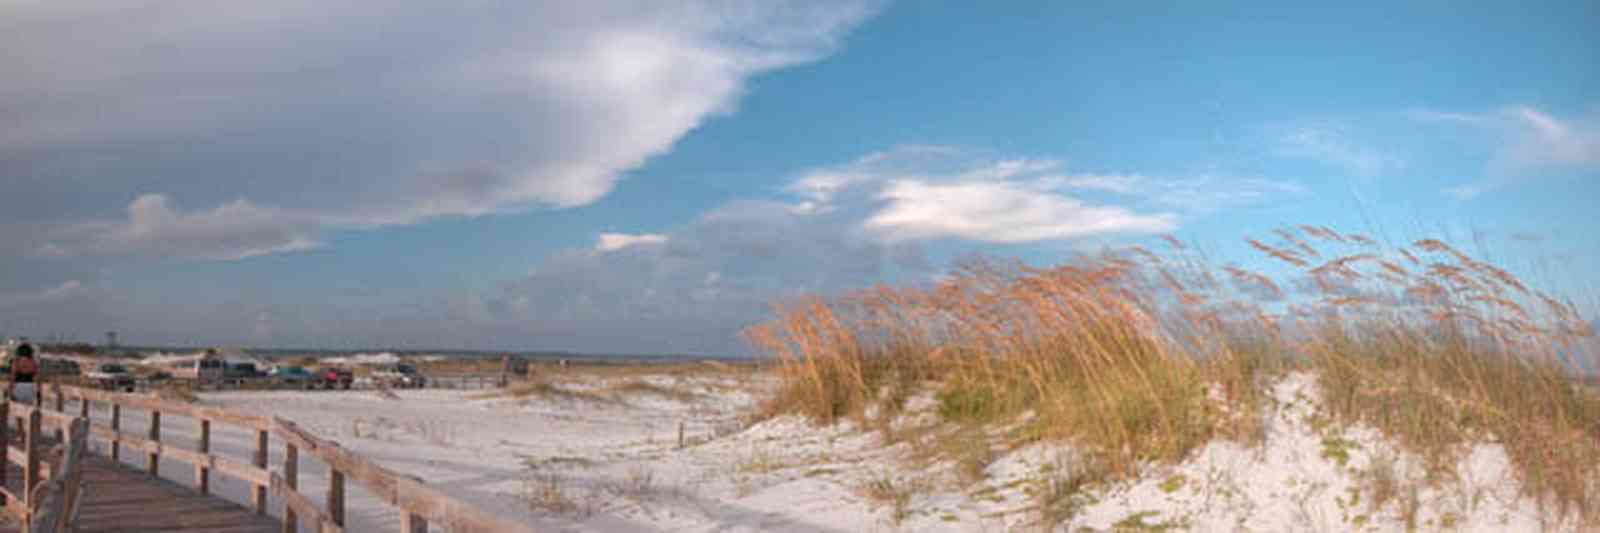 Gulf-Islands-National-Seashore:-Opal-Beach_07.jpg:  dunes, sea oats, boardwalk, parking lot, mixed skies, gulf of mexico, beach habitat, barrier island, quartz sand, fiddler crab